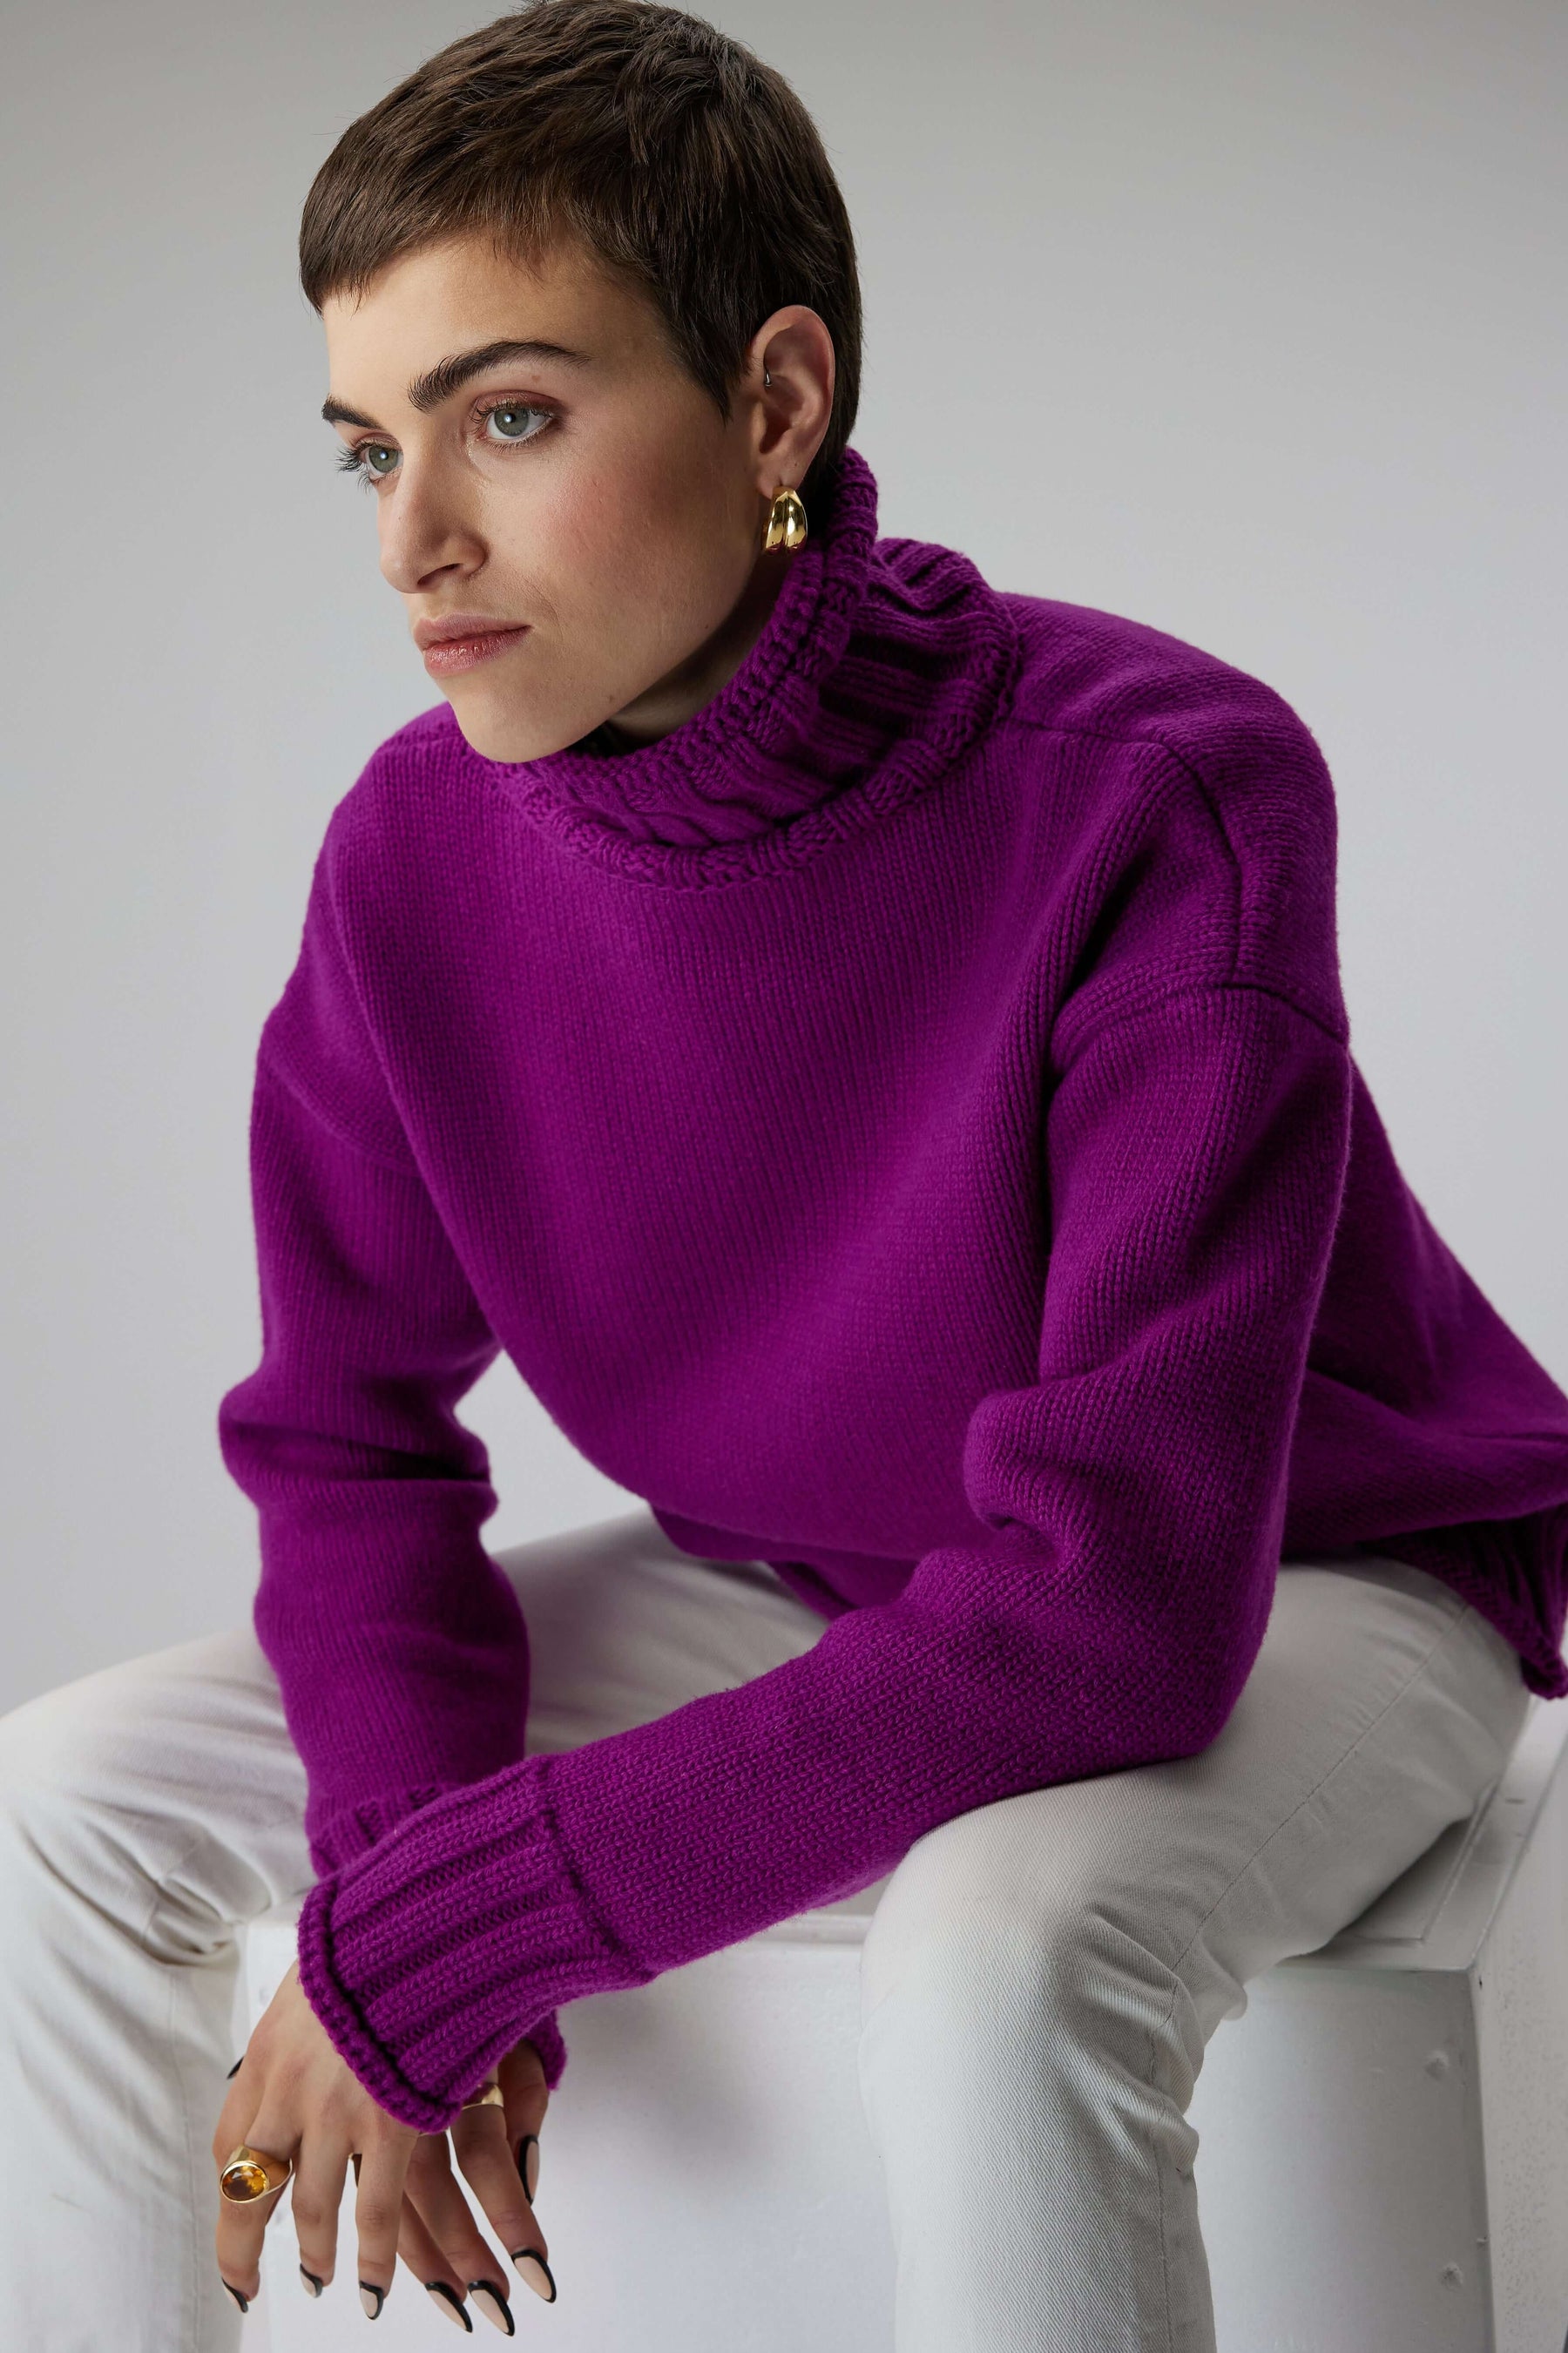 Opal sweater in Cardinal knit